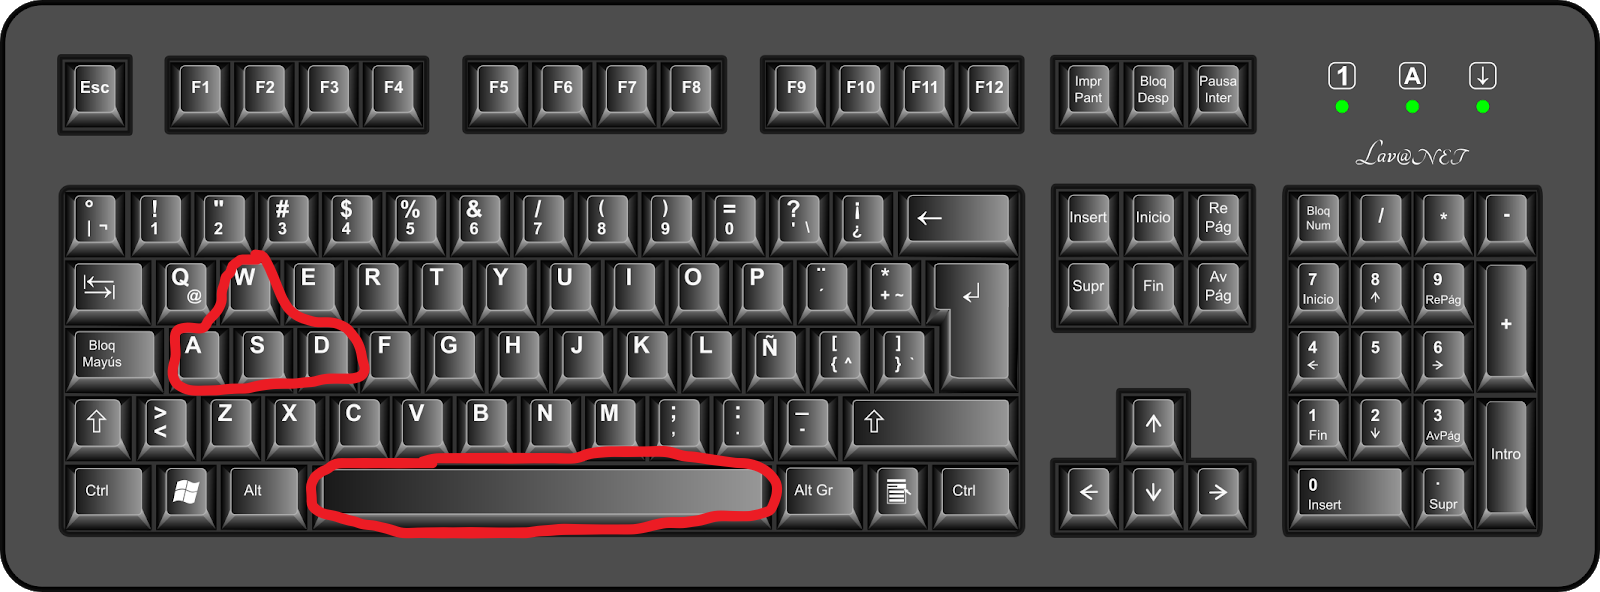 Como girar la pantalla del ordenador con el teclado